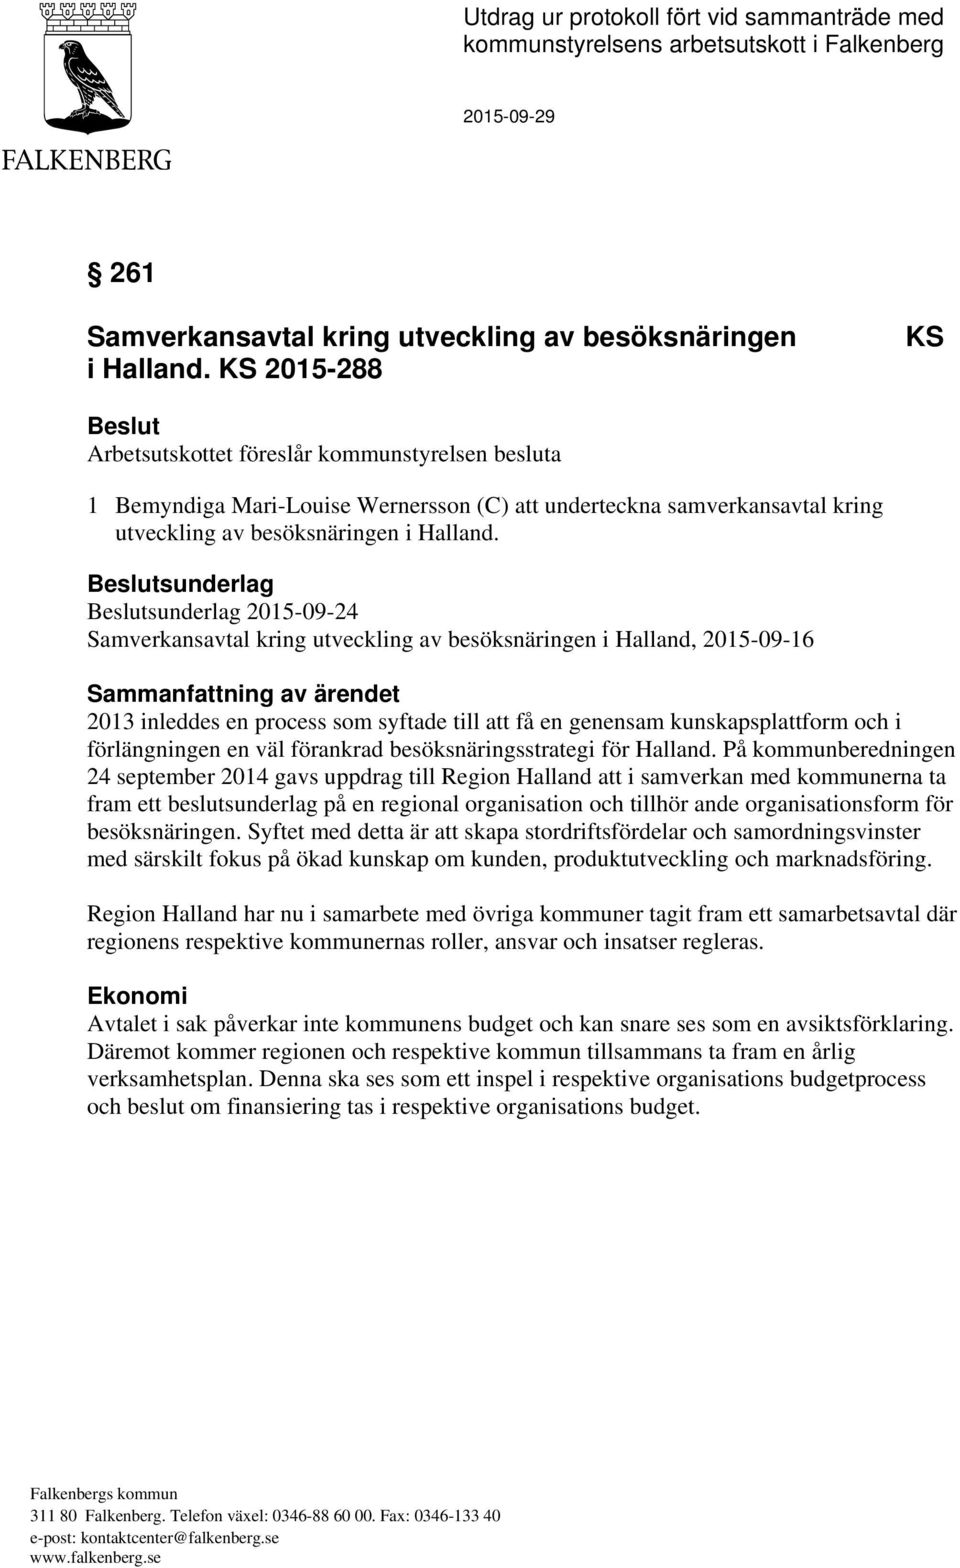 Beslutsunderlag Beslutsunderlag 2015-09-24 Samverkansavtal kring utveckling av besöksnäringen i Halland, 2015-09-16 Sammanfattning av ärendet 2013 inleddes en process som syftade till att få en